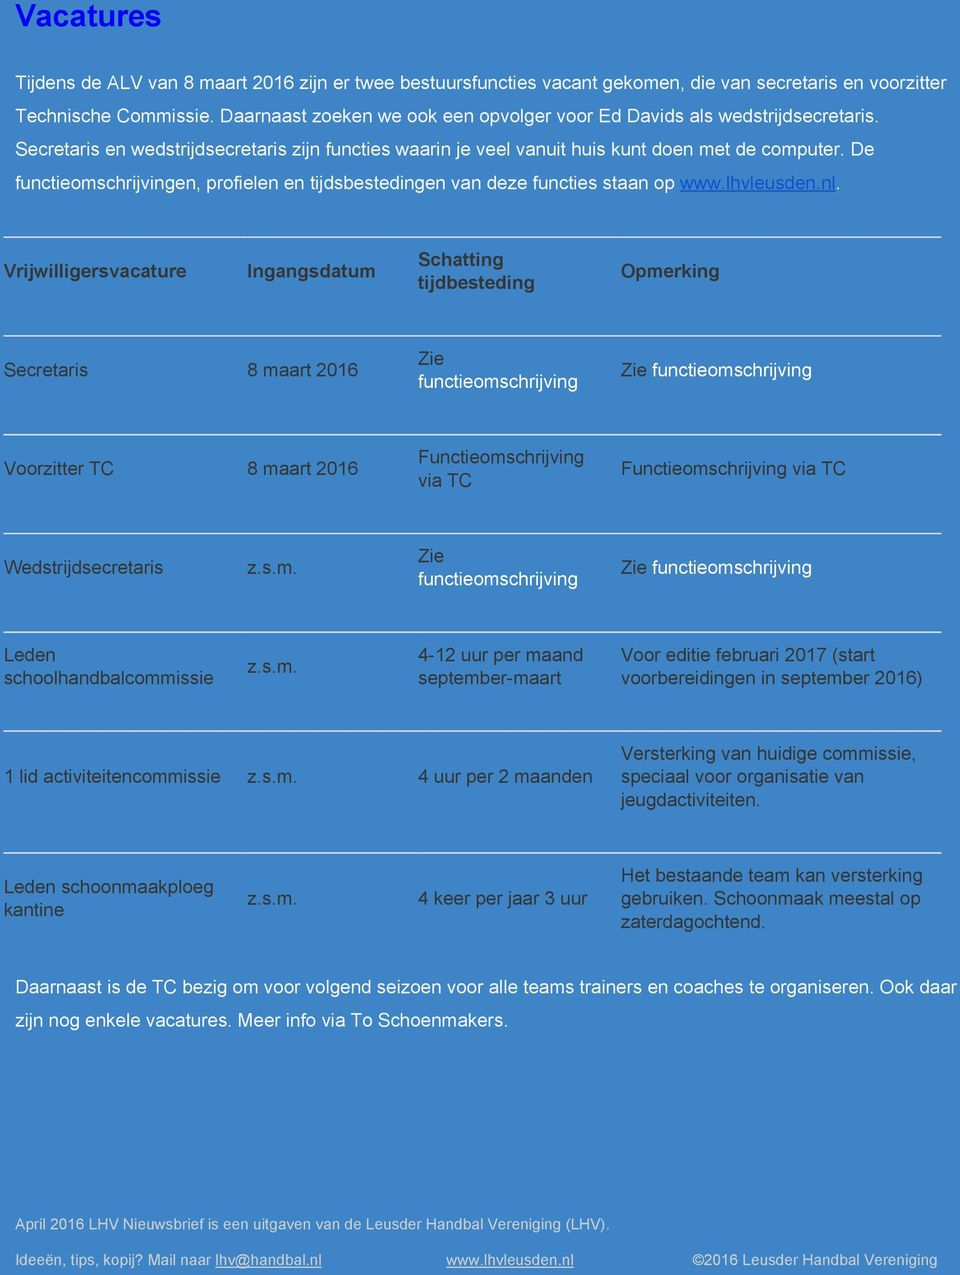 De functieomschrijvingen, profielen en tijdsbestedingen van deze functies staan op www.lhvleusden.nl.